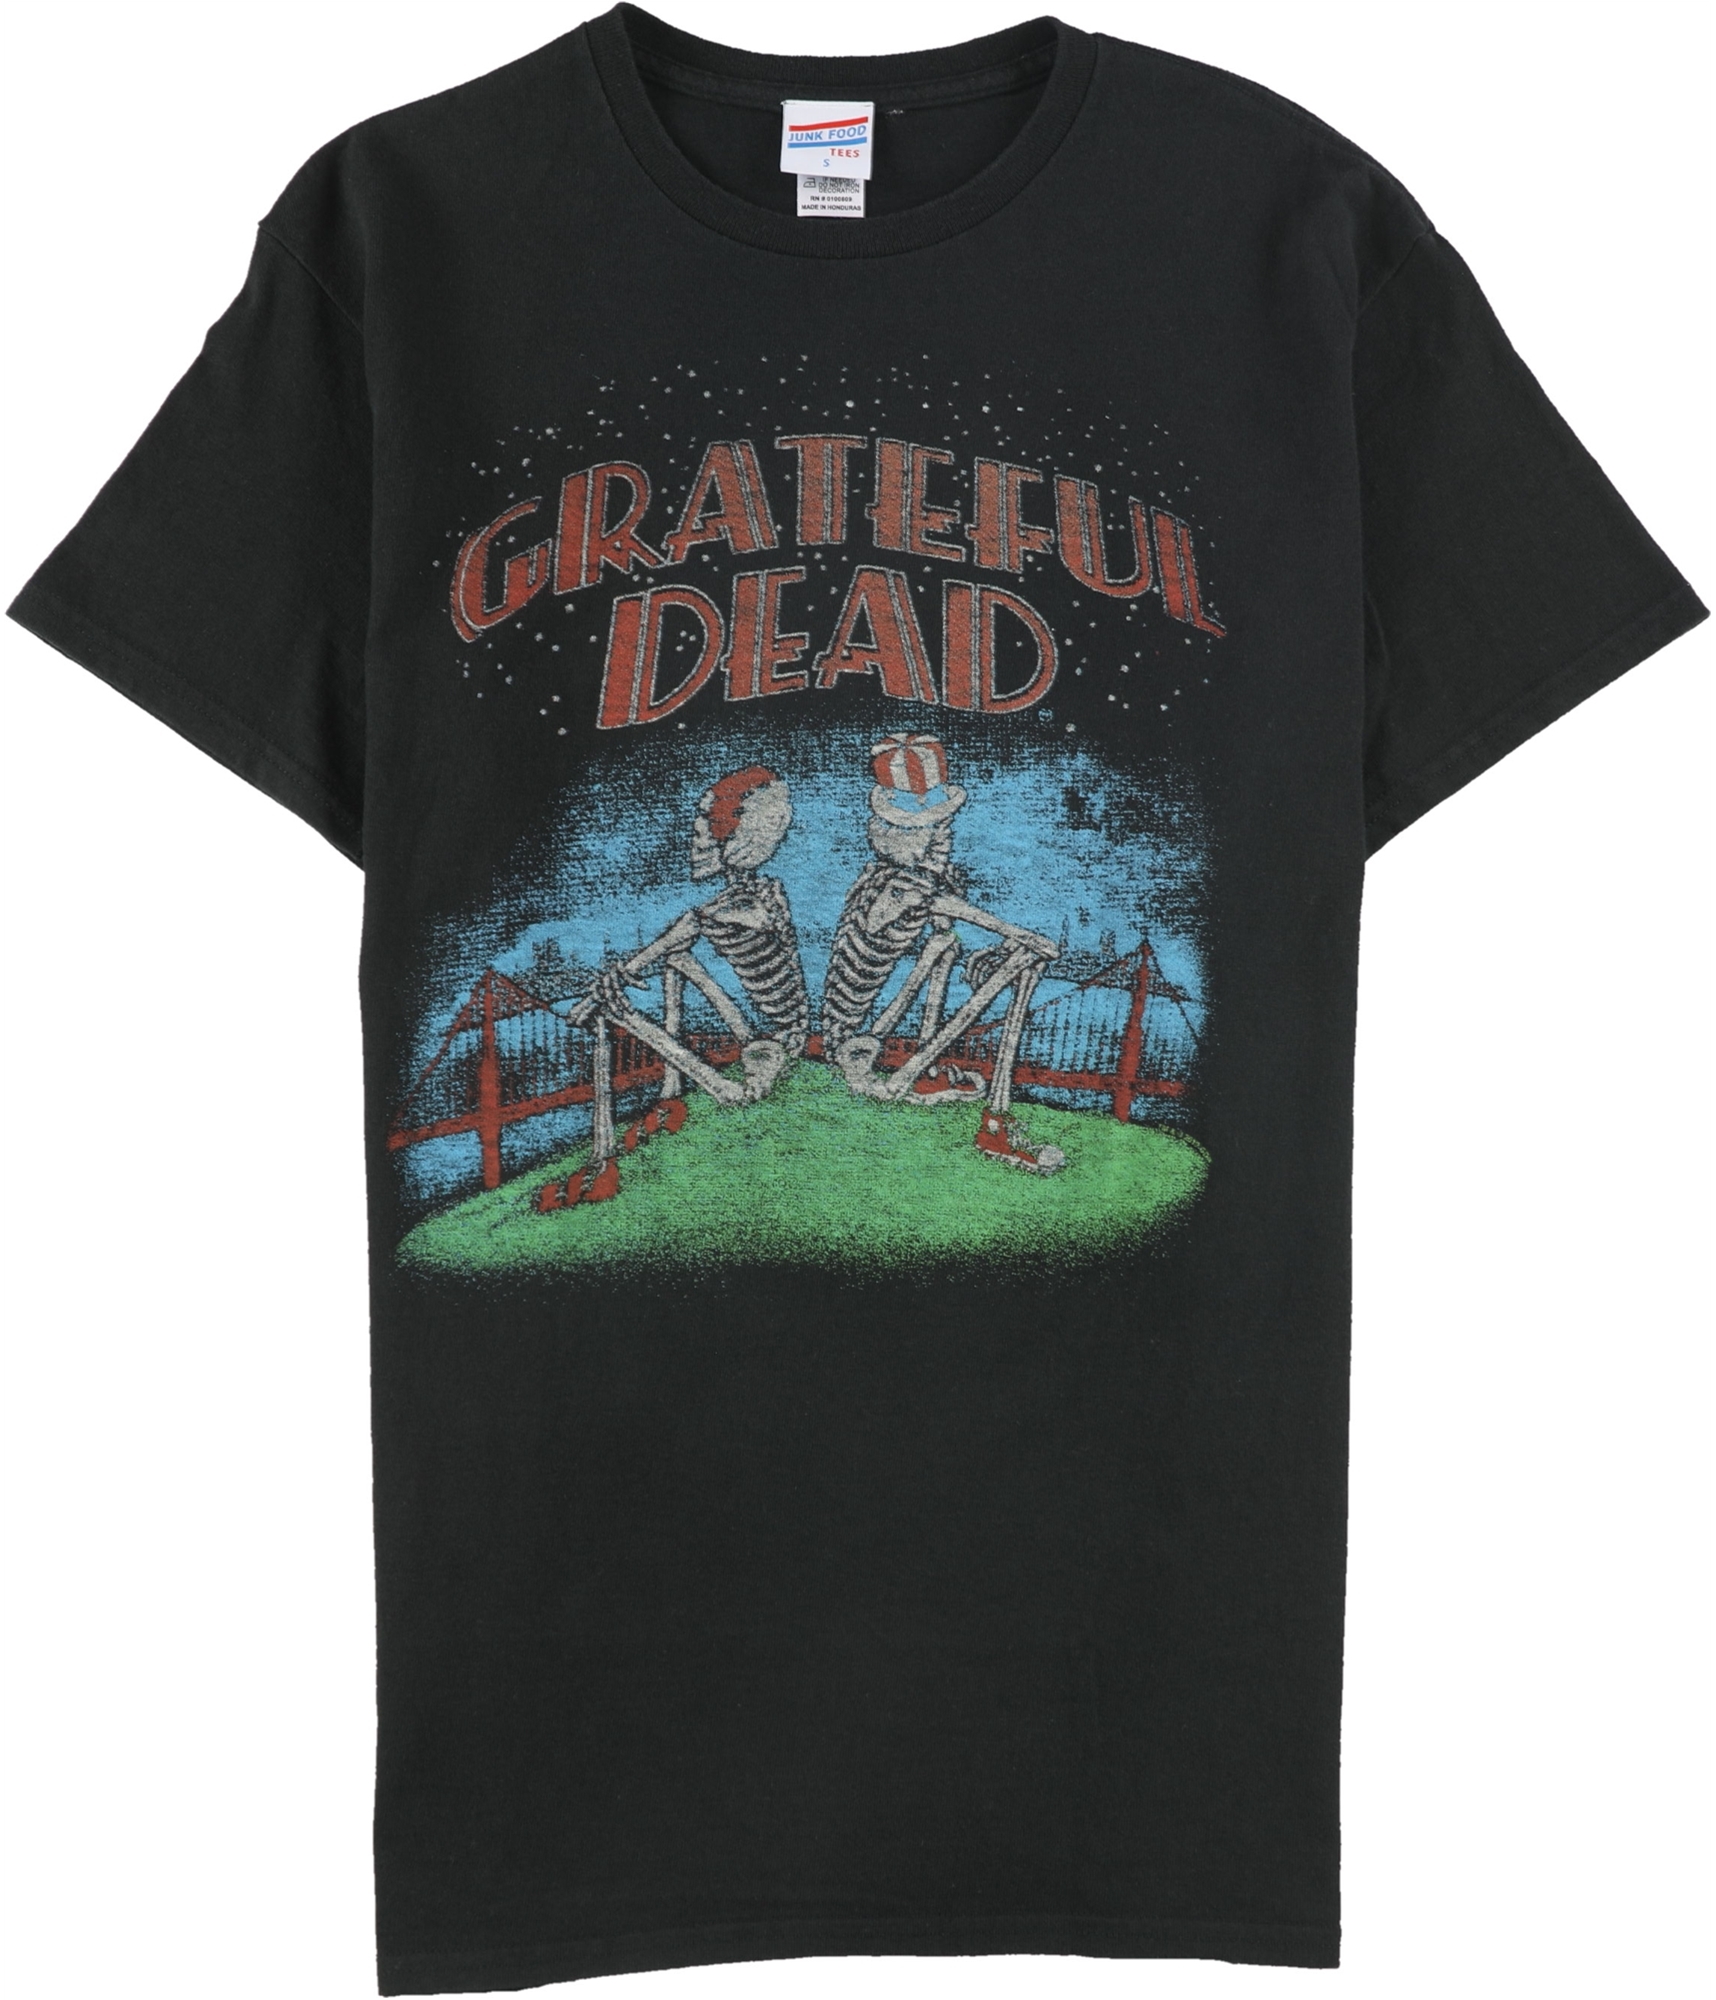 Junk Food Mens Grateful Dead Graphic T-Shirt, Black, Small